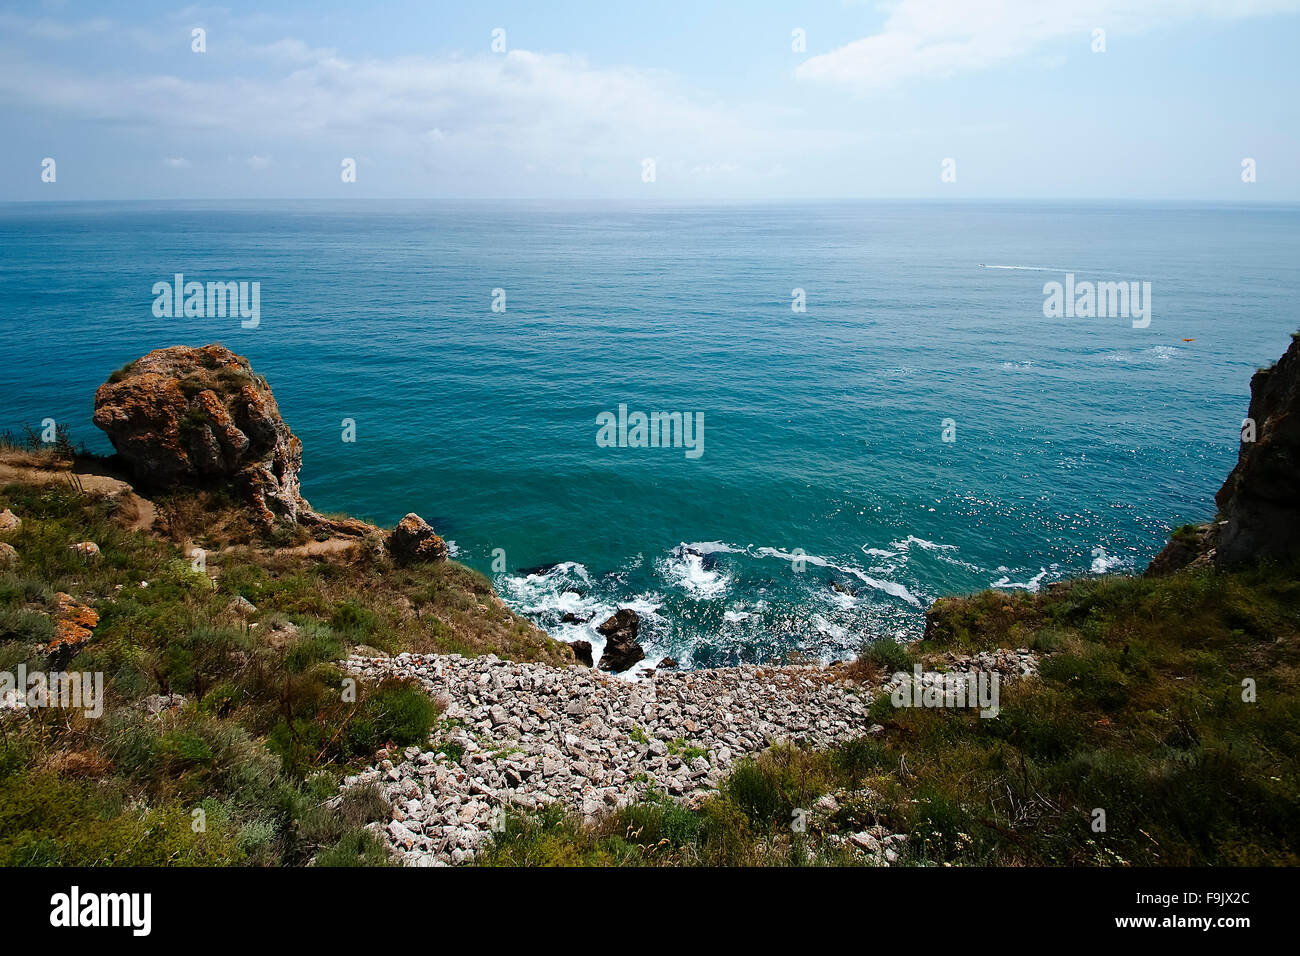 La côte escarpée du cap Kaliakra, été, Bulgarie, Mer Noire Banque D'Images